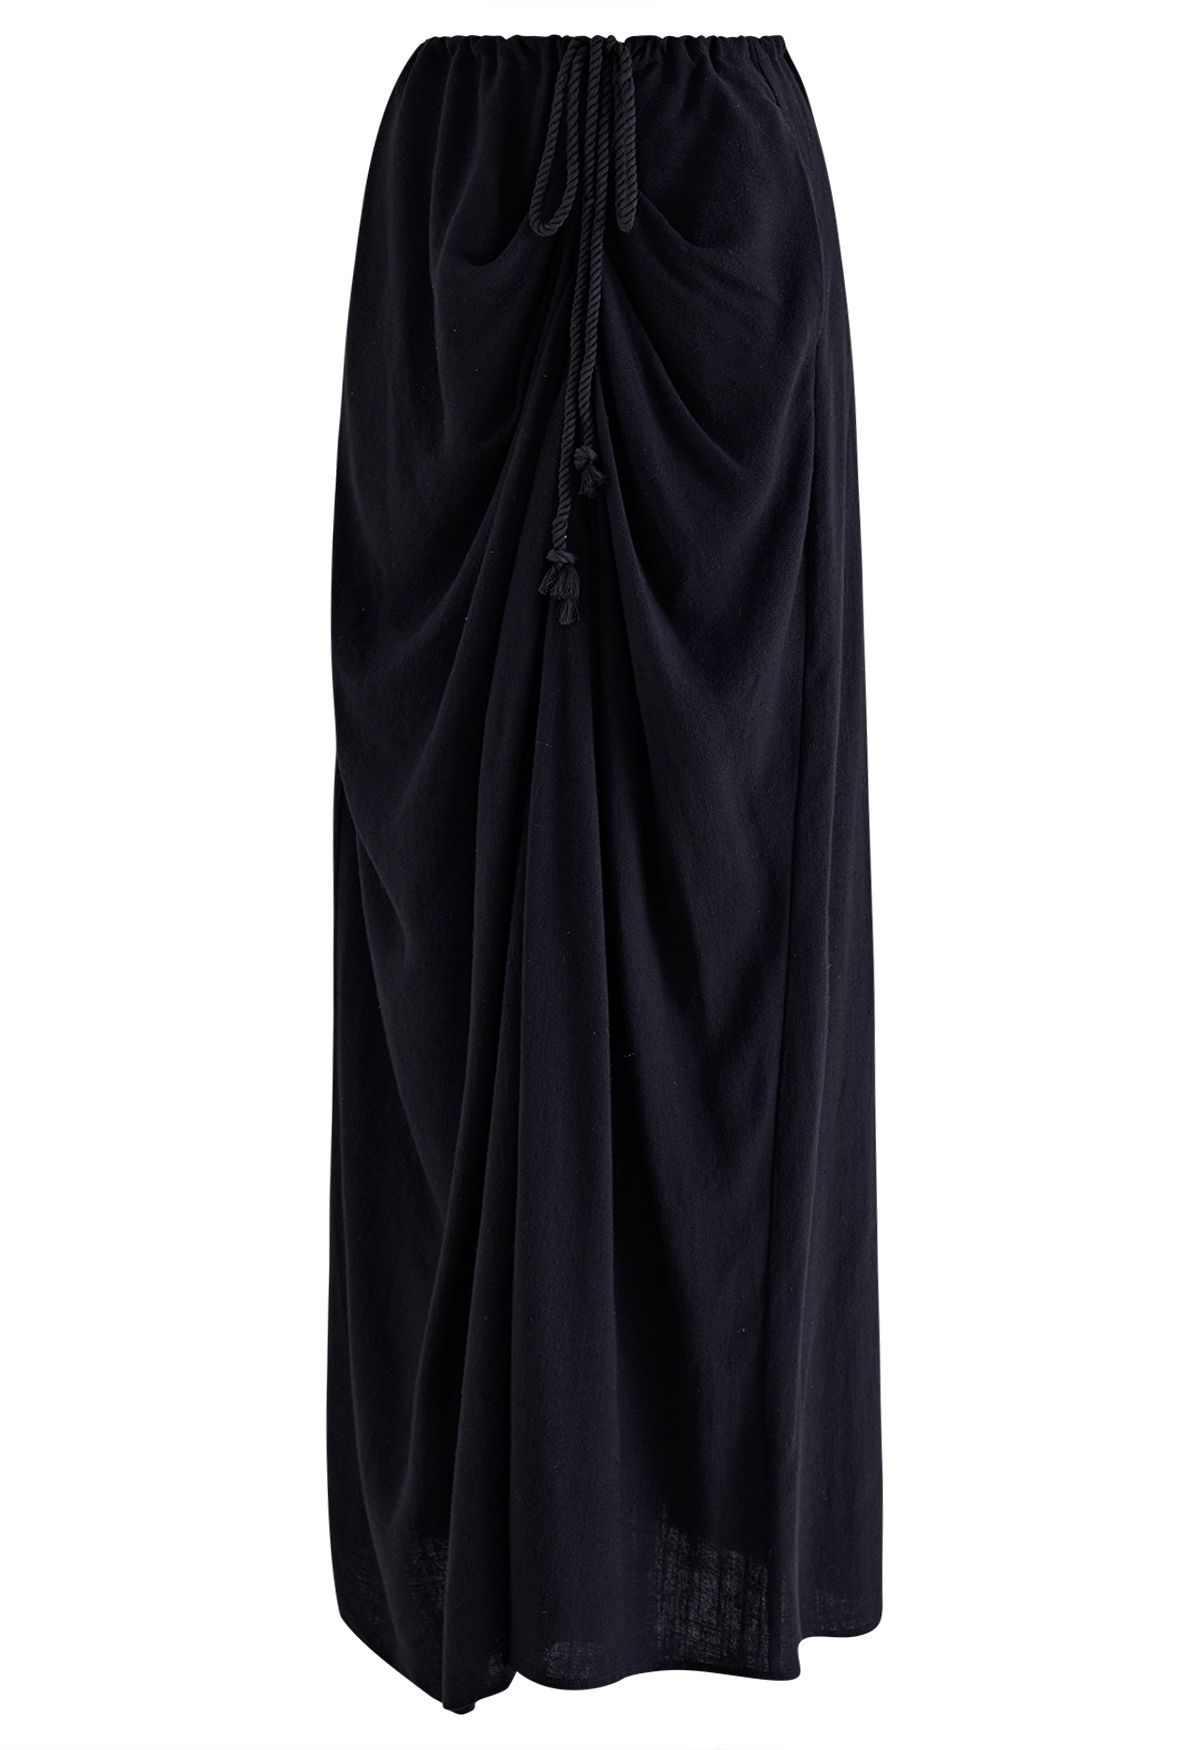 Breathable Linen Drape Maxi Skirt in Black